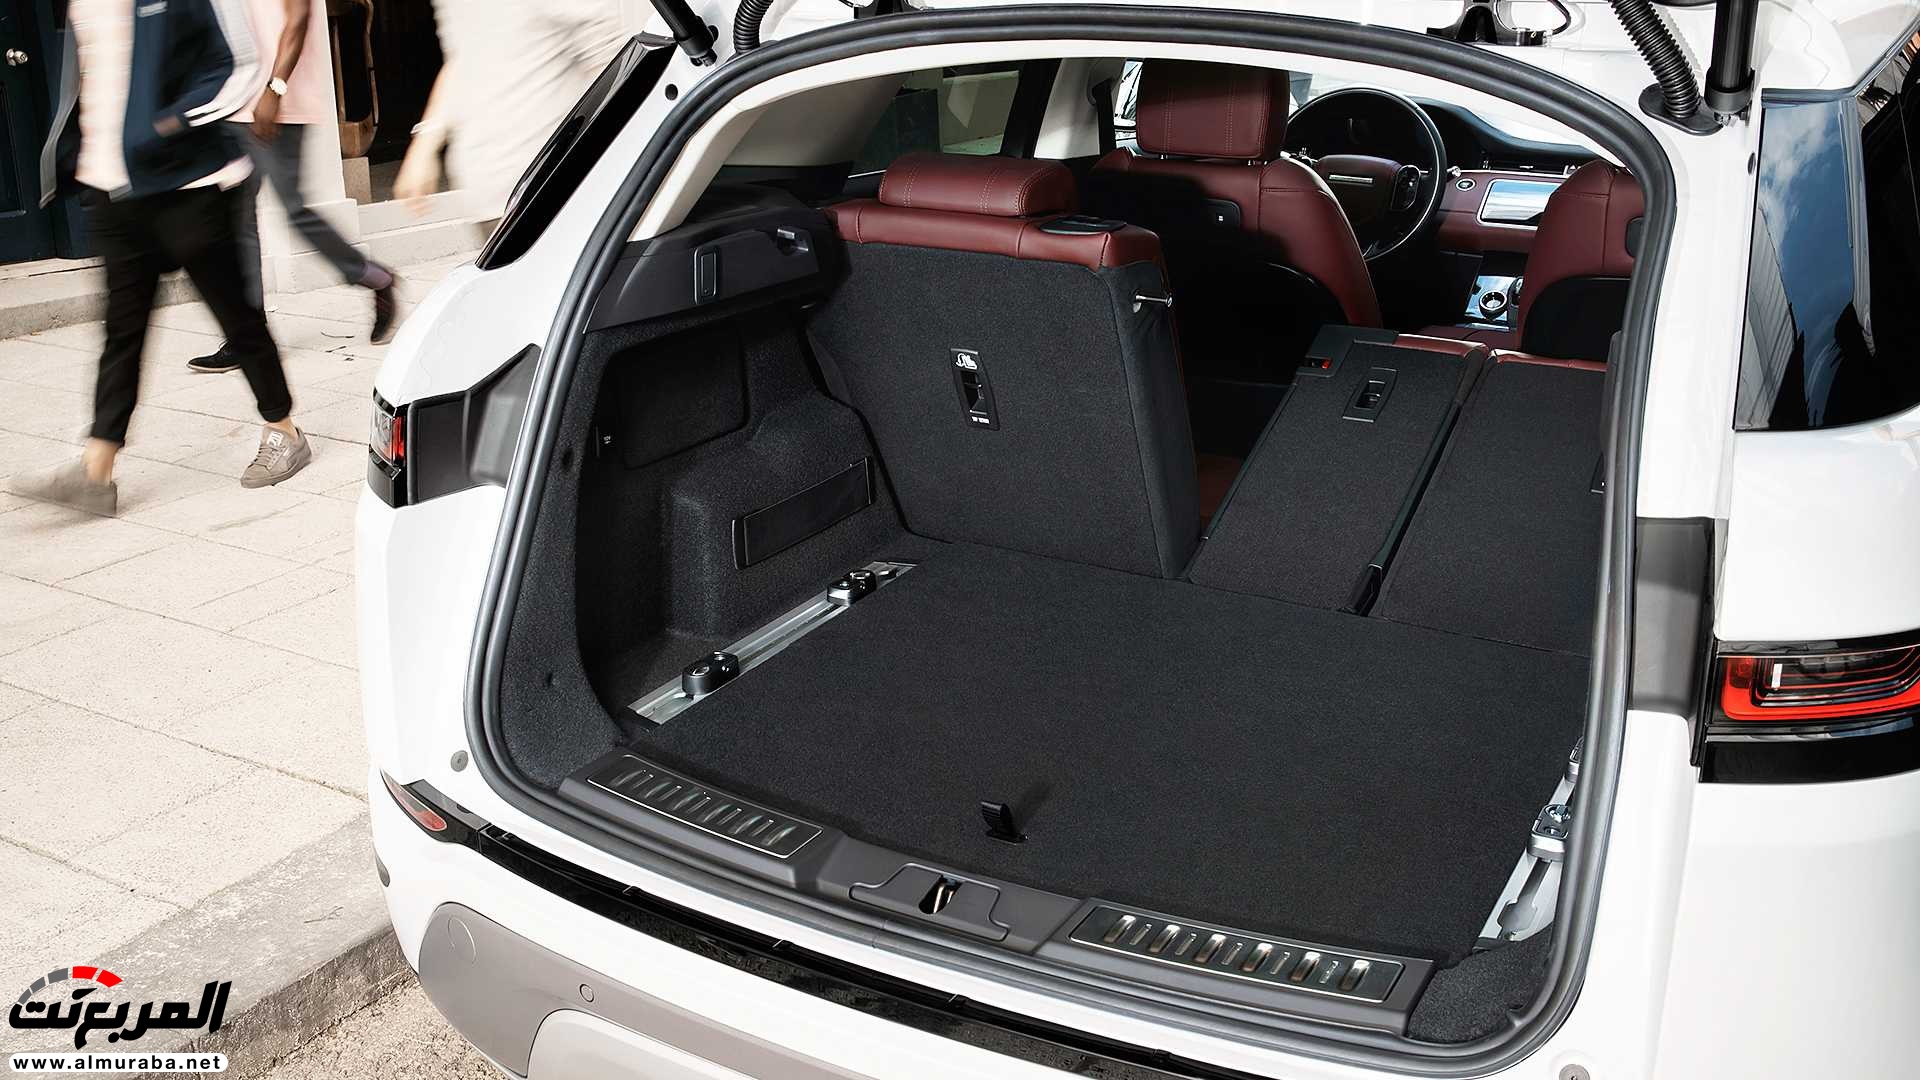 اهم 7 معلومات عن رنج روفر ايفوك 2020 الجديدة كلياً Range Rover Evoque 60